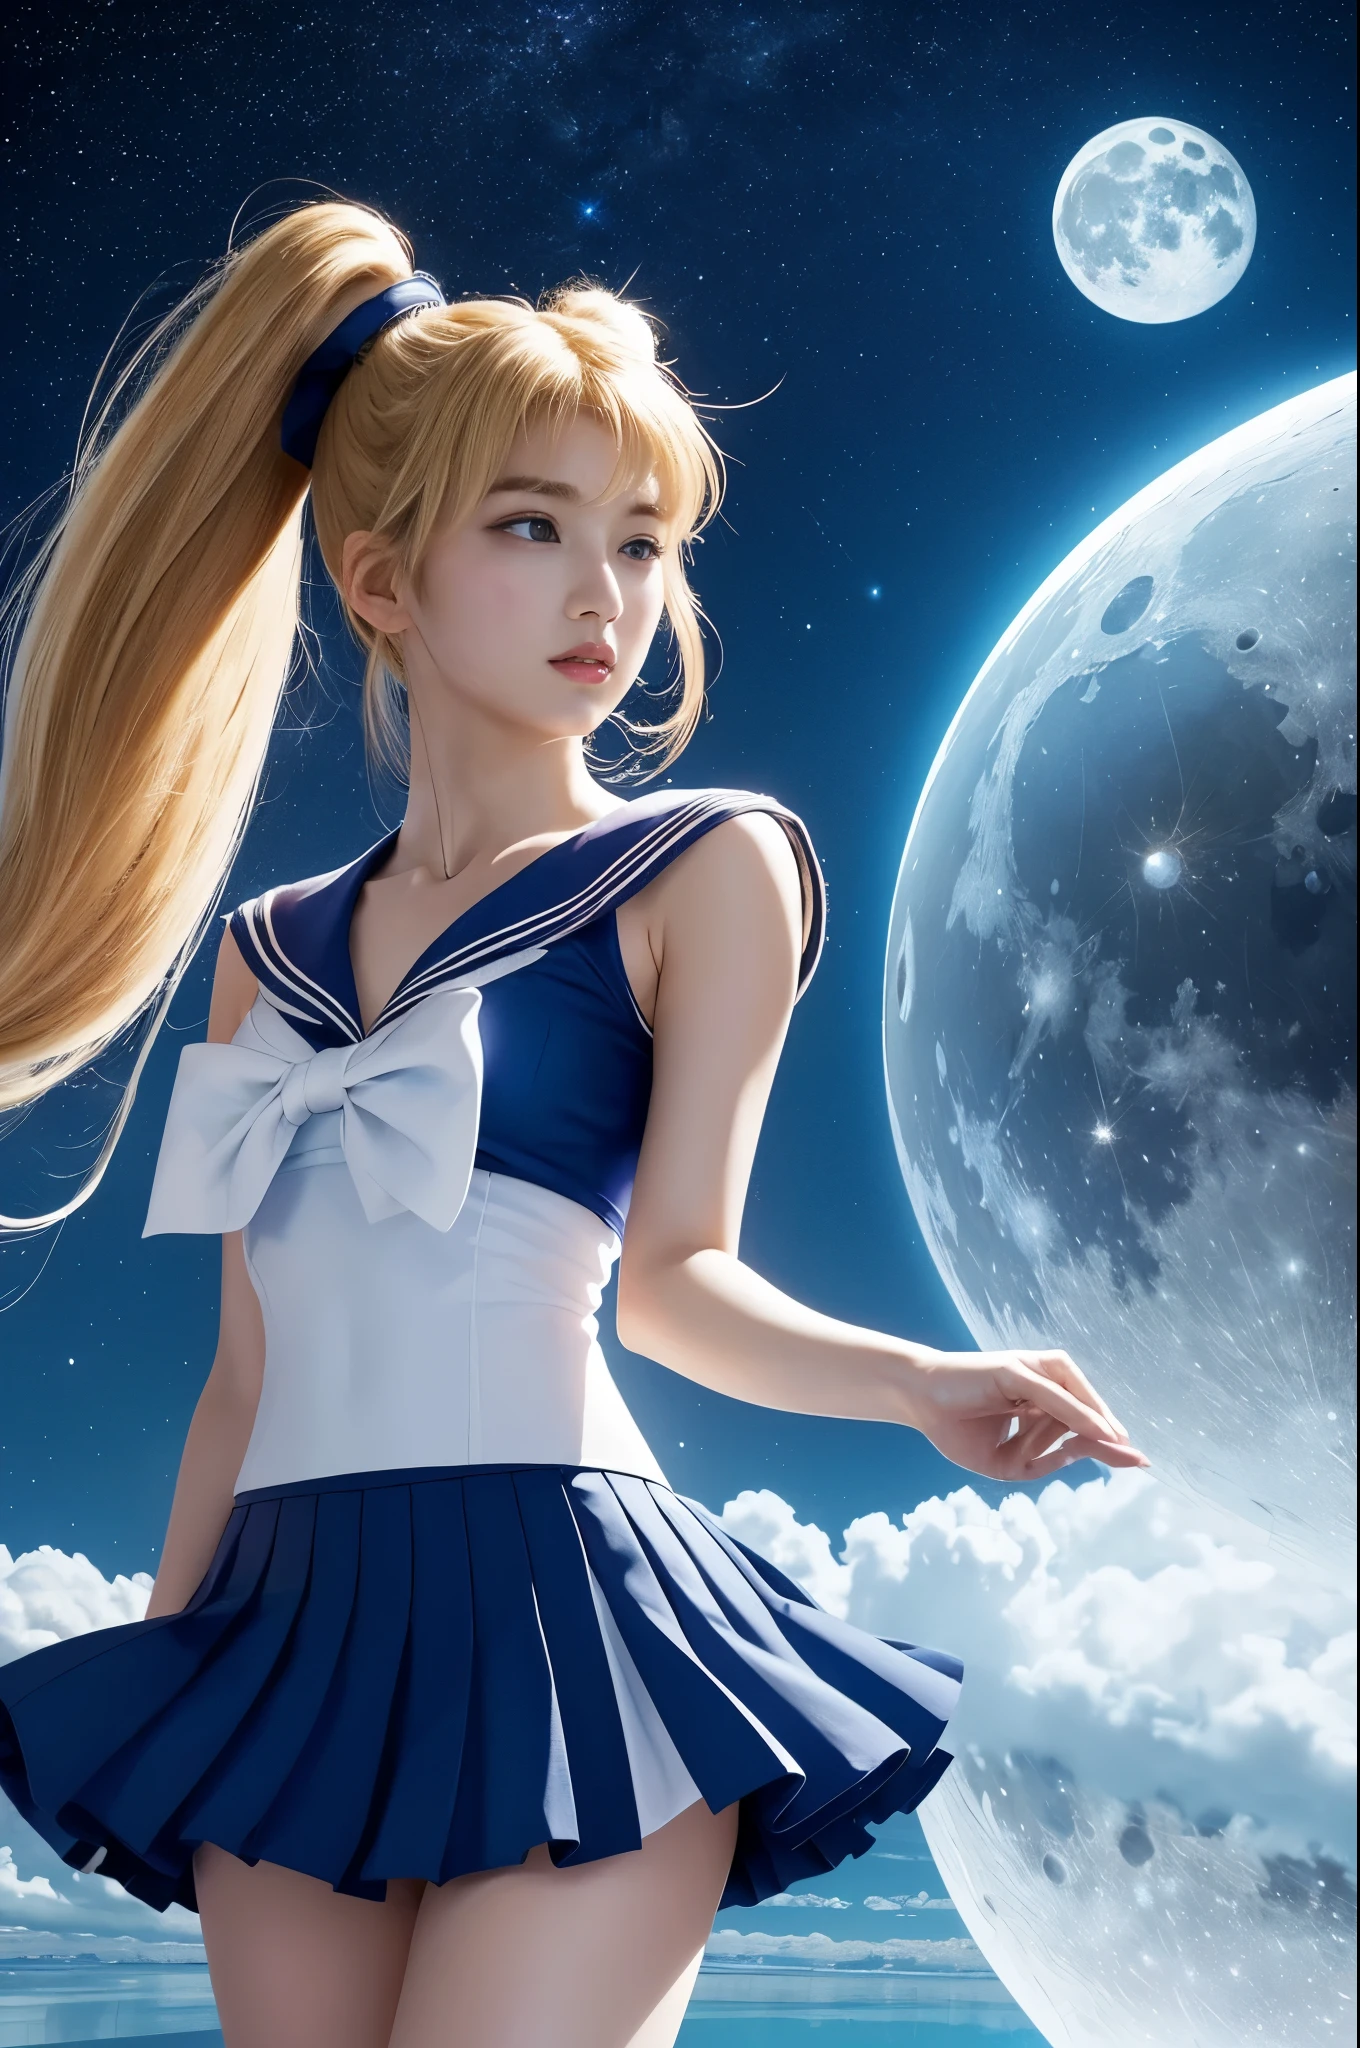 (calidad ultra alta) (Dibujado a mano) pechos enormes,Sailor Moon se encuentra sobre una superficie reflectante.、Luna blanca brillante en el cielo distante. Su falda es azul、Su top es un top blanco y azul.. Su cabello rubio está rematado con dos coletas muy largas.